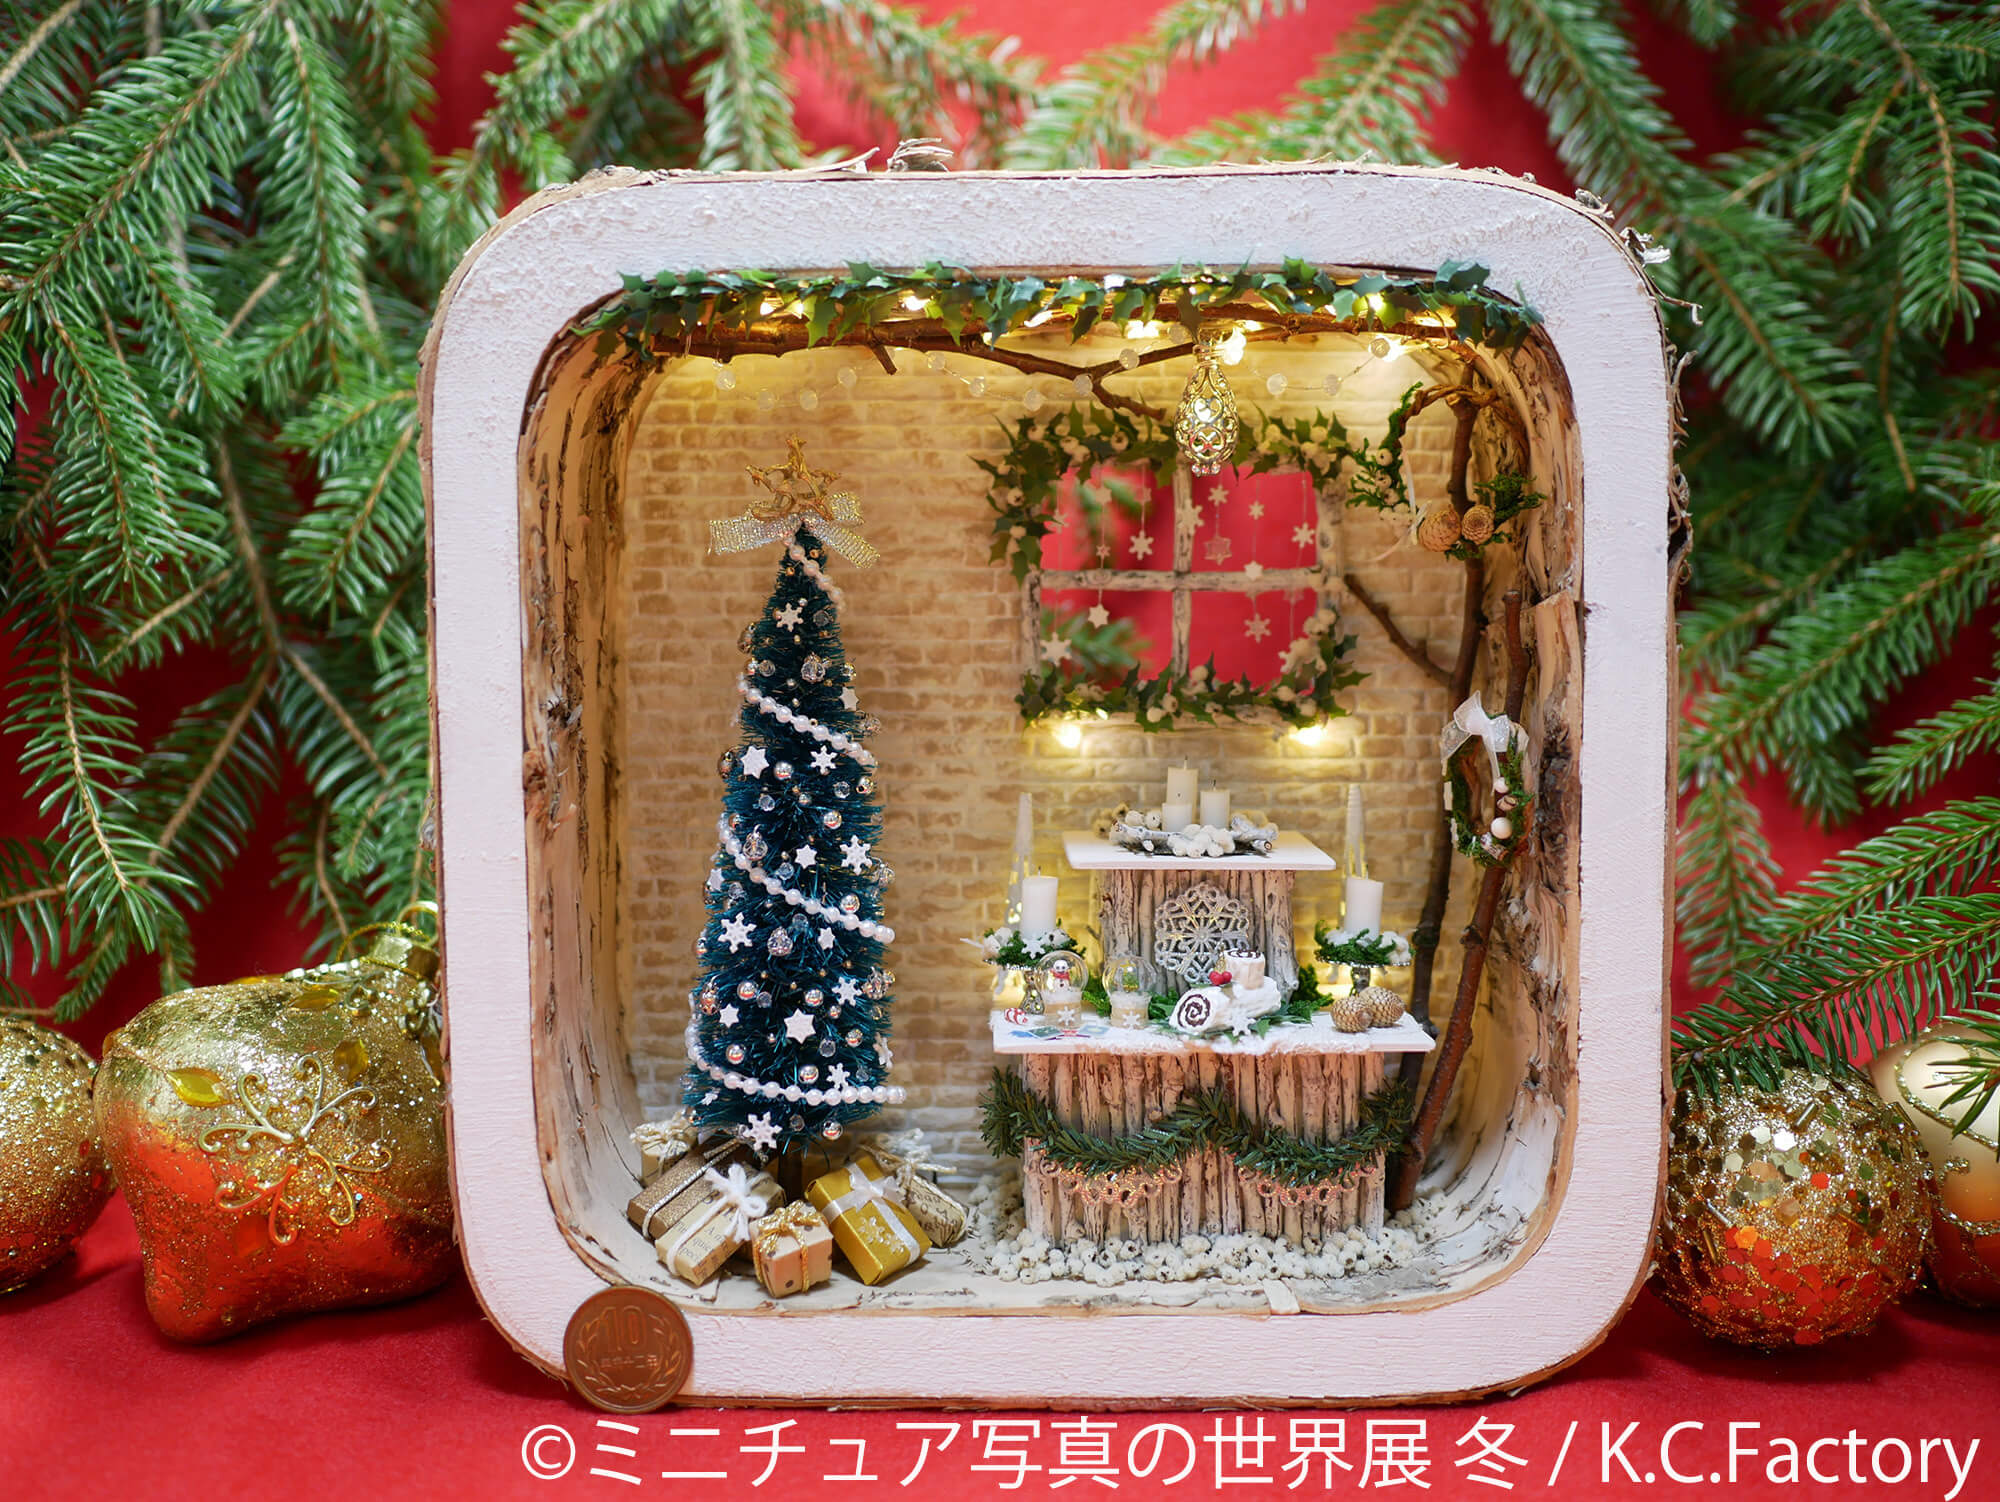 ミニチュア写真の世界展 冬 miniature exhibition